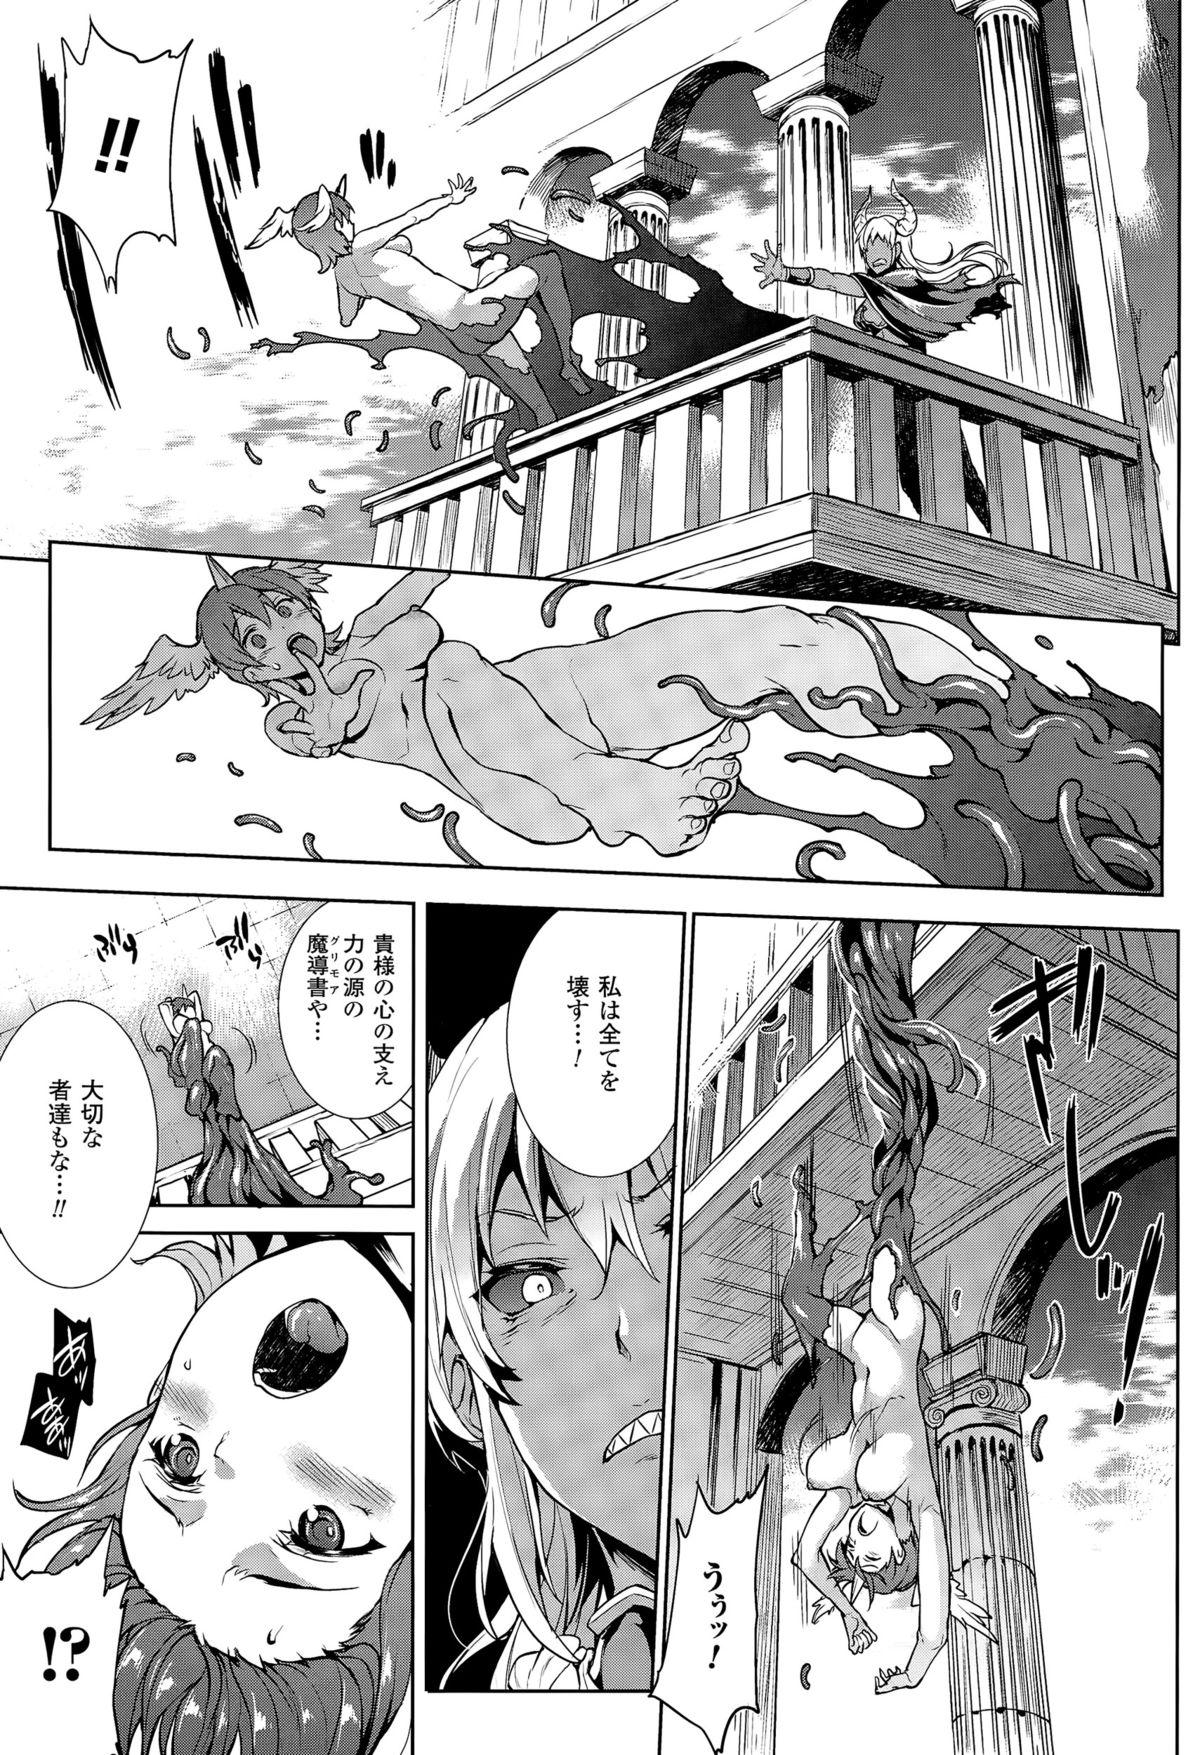 [Erect Sawaru] Shinkyoku no Grimoire -PANDRA saga 2nd story- CH 13-20 61